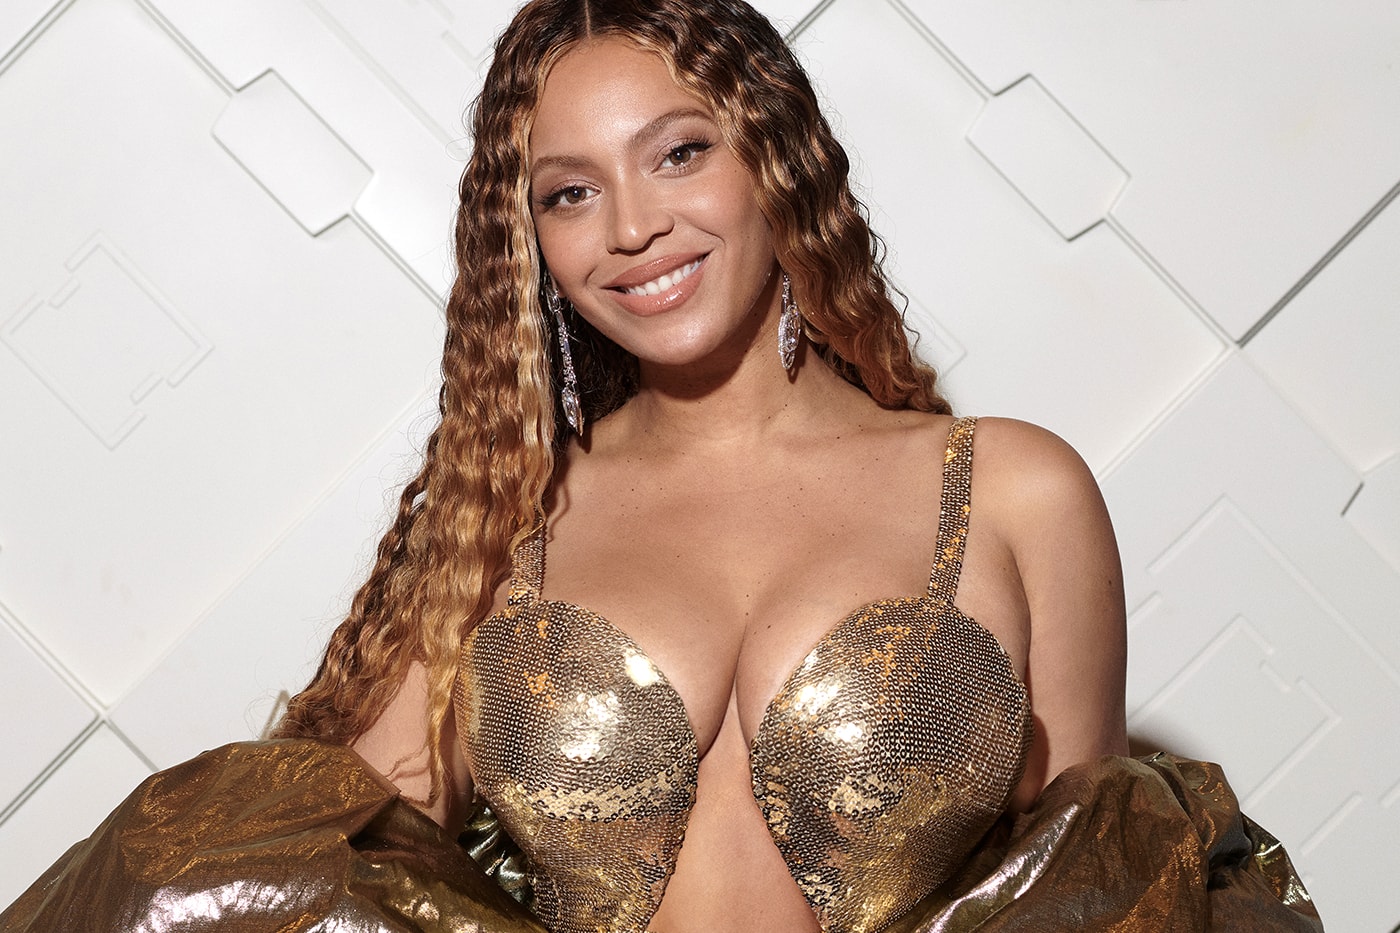 消息稱 Beyoncé 與 adidas 已分道揚鑣結束合作關係